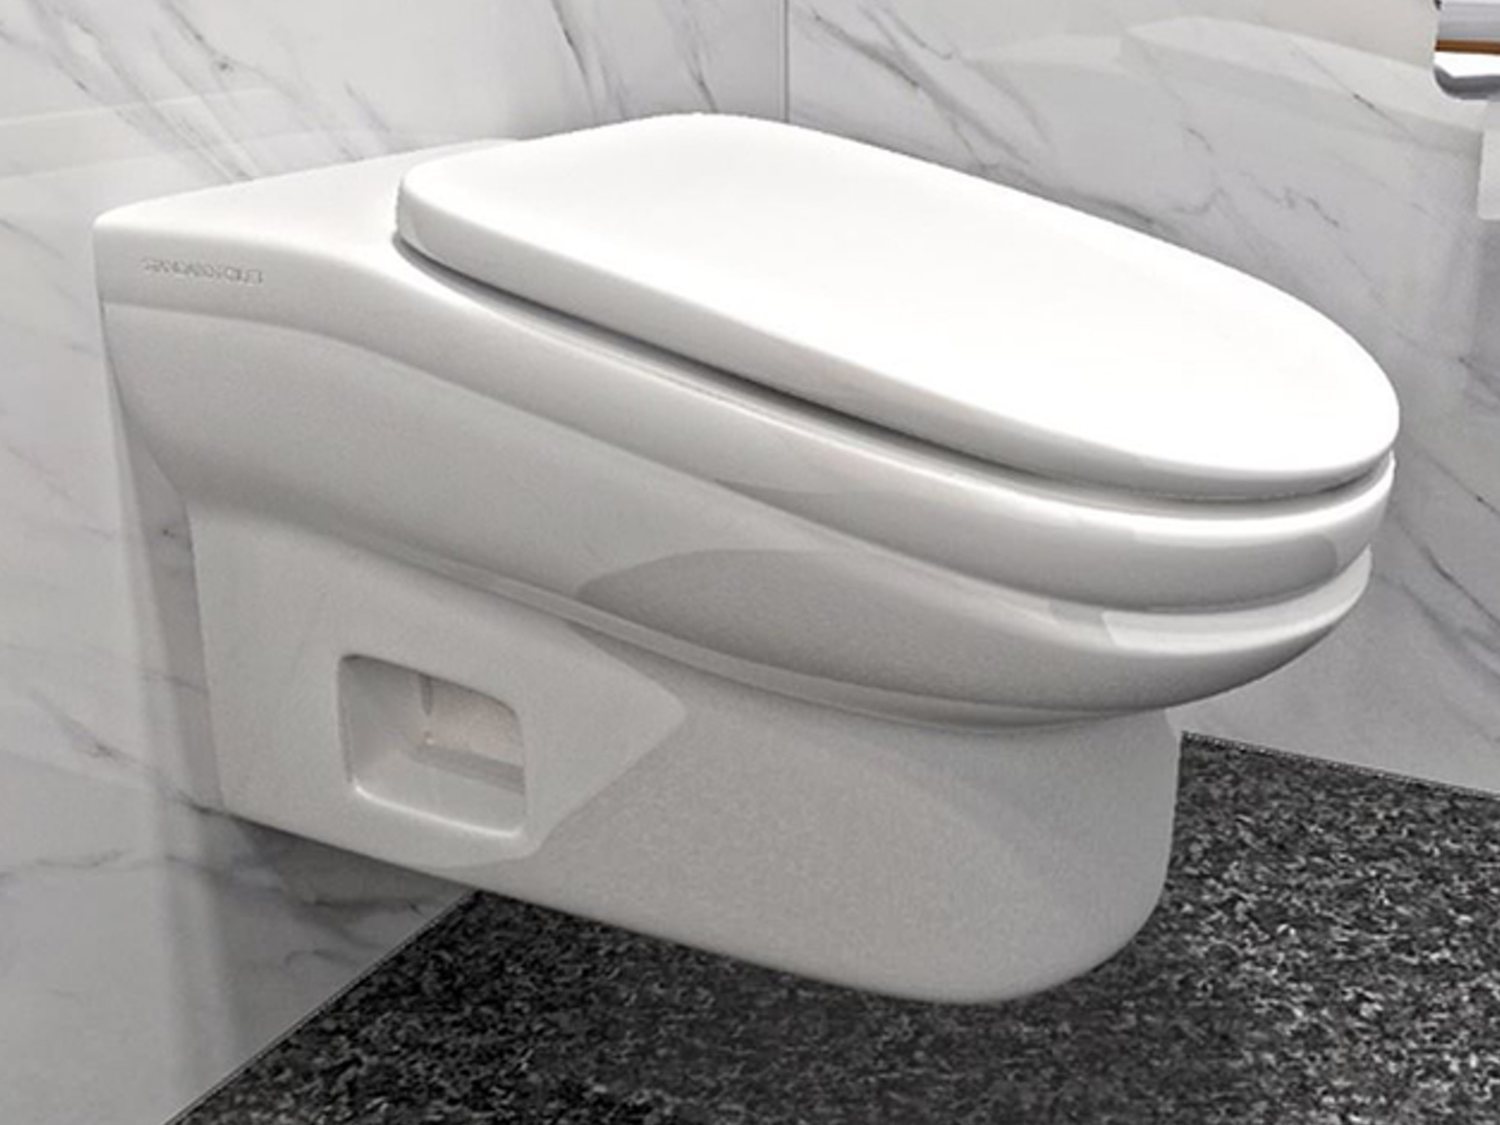 Crean un retrete que provoca dolores de espalda para que los empleados vayan menos al WC